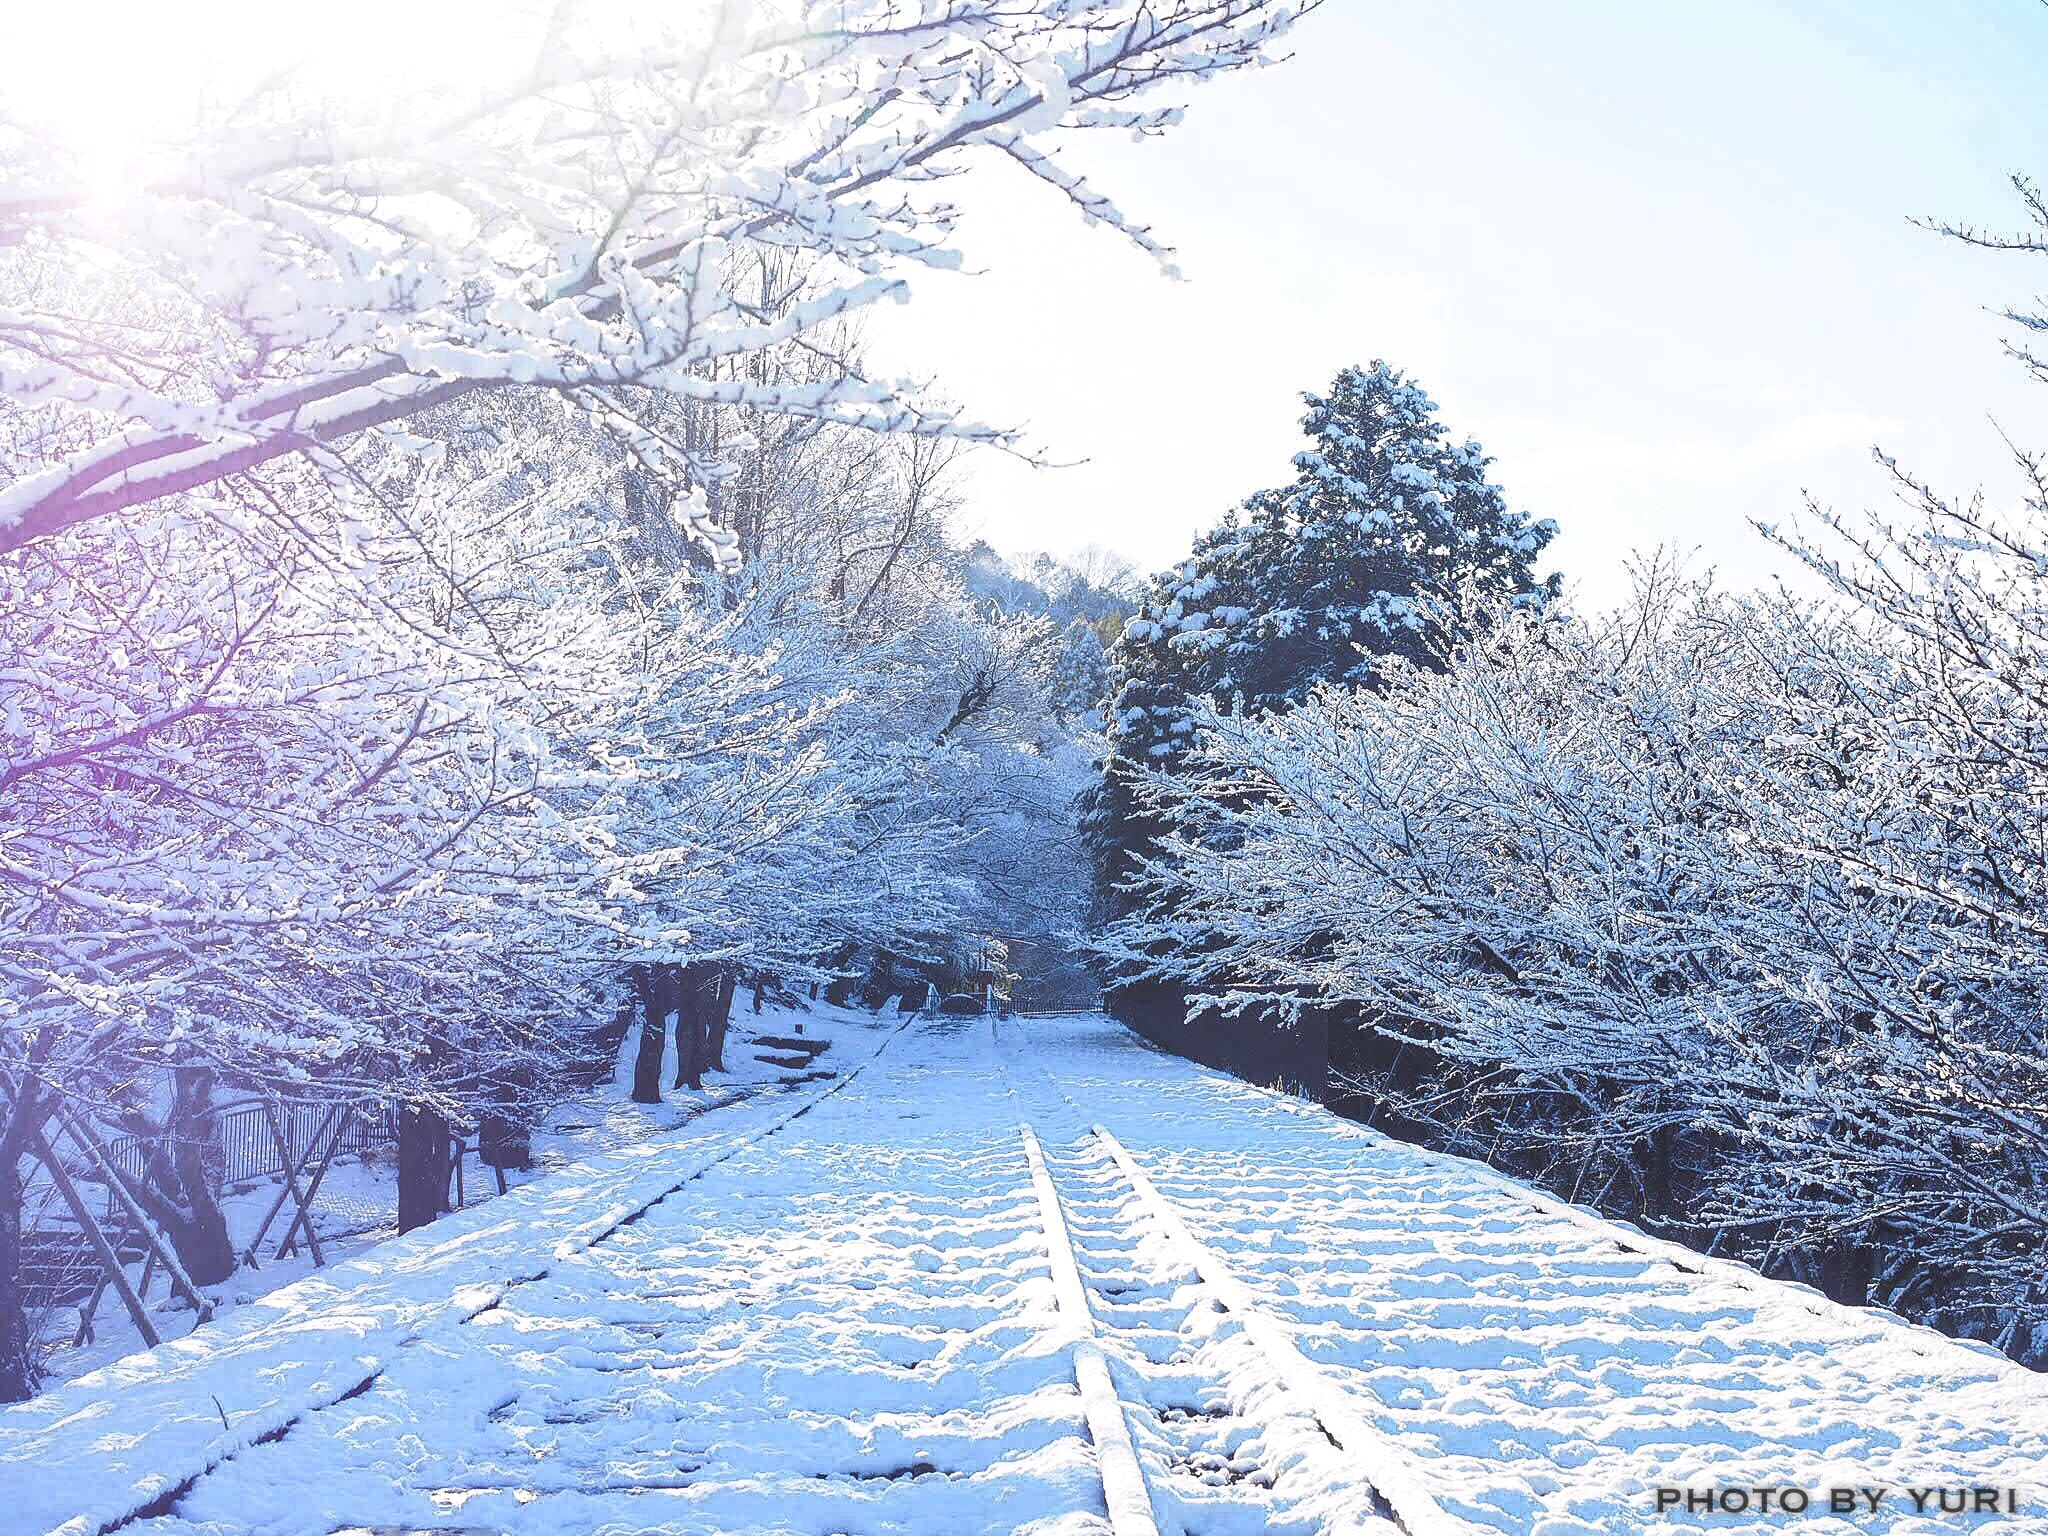 最も欲しかった 京都 雪景色 壁紙 京都 雪景色 壁紙 Jpsaepictbjio